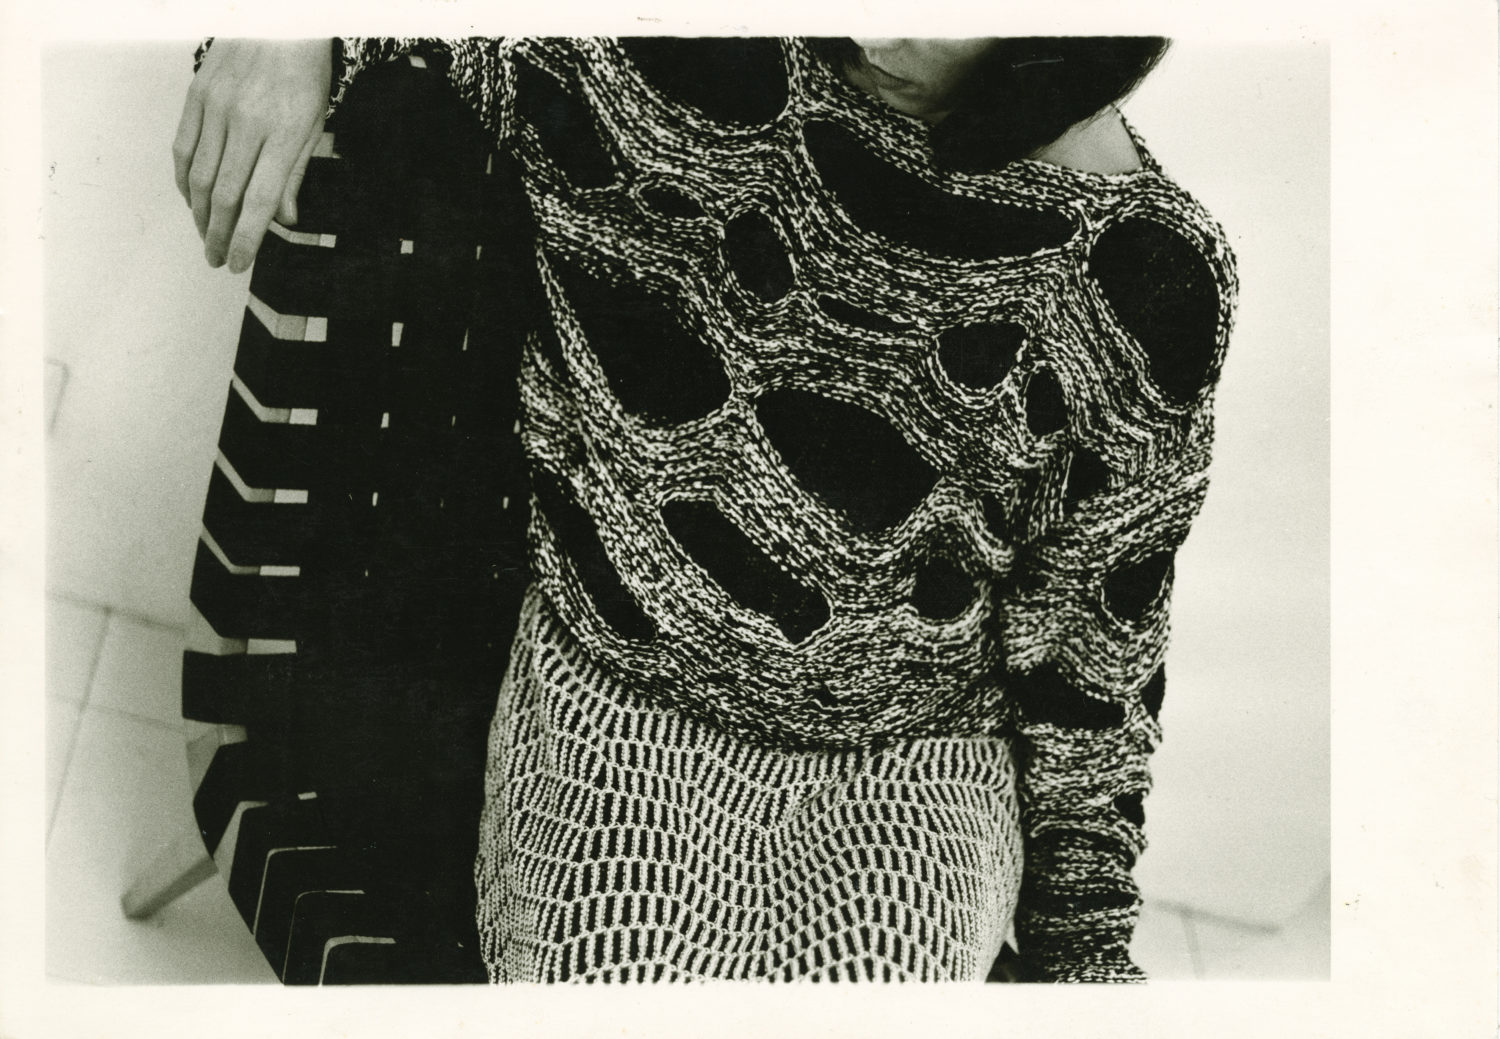 Silke Grossmann, Bild für Claudia Skoda, in Zusammenarbeit mit Cynthia Beatt, Silbergelatine-Vintageprint, 1983, © Silke Grossmann